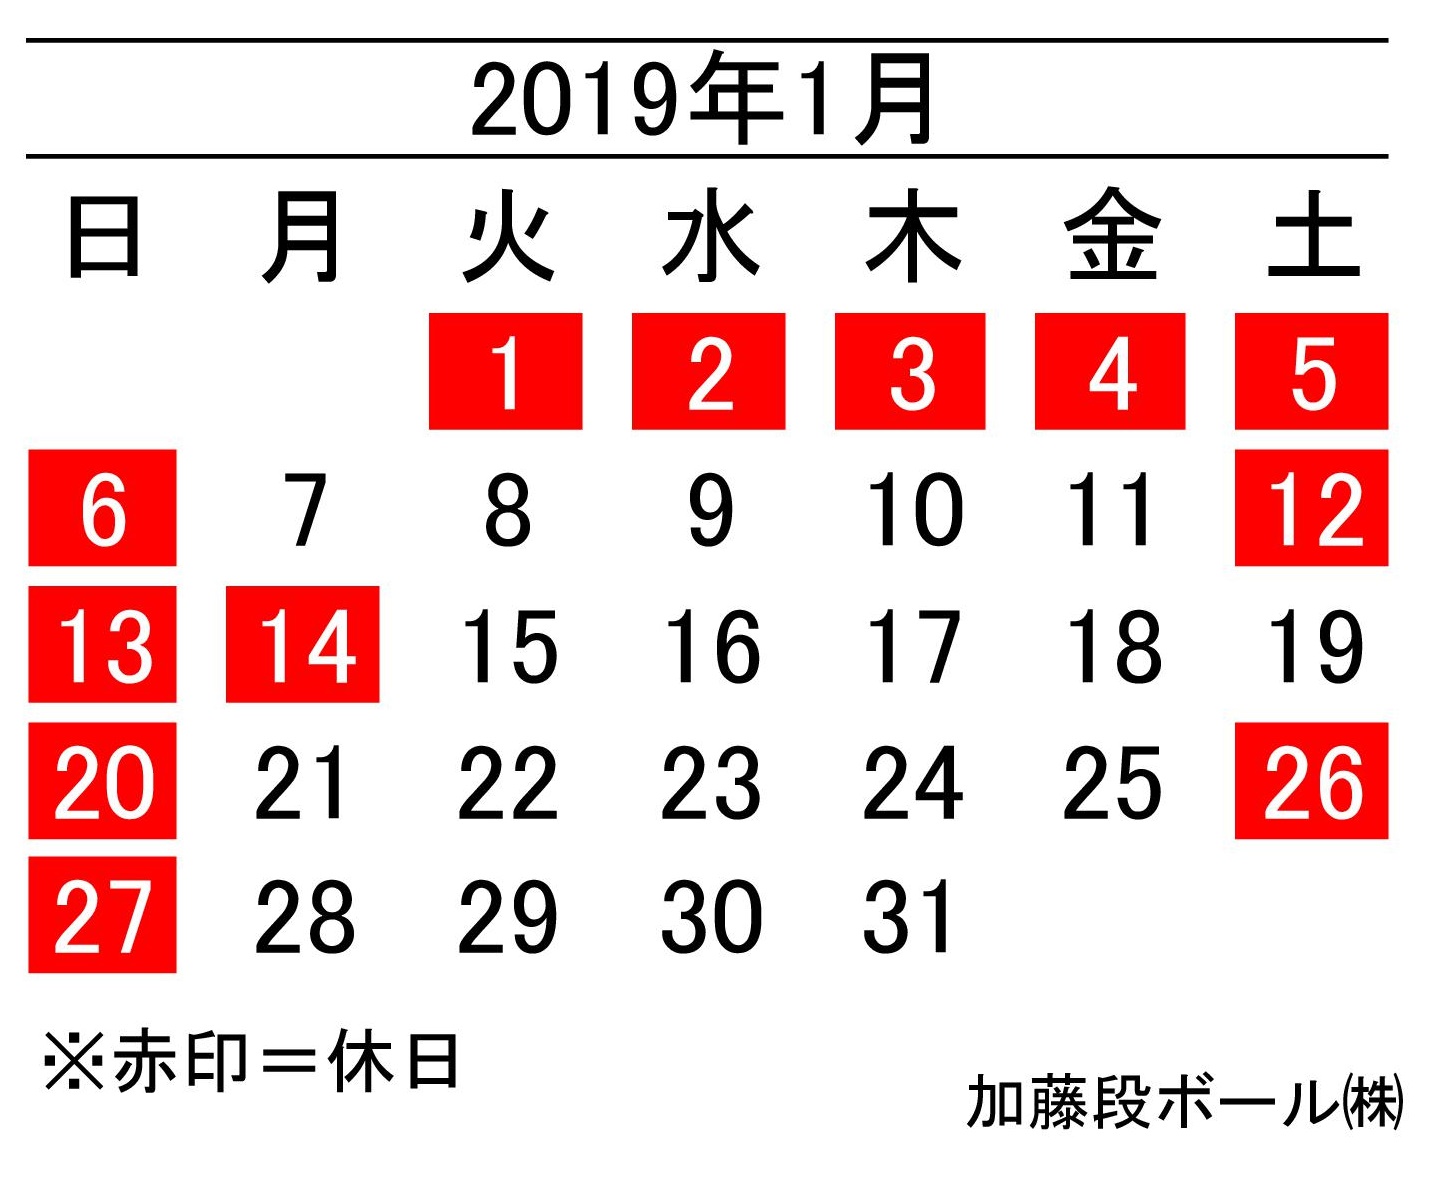 19年1月度営業日カレンダー 加藤段ボール株式会社 千葉 福島 神奈川を中心に段ボール製品 梱包資材の製造と販売